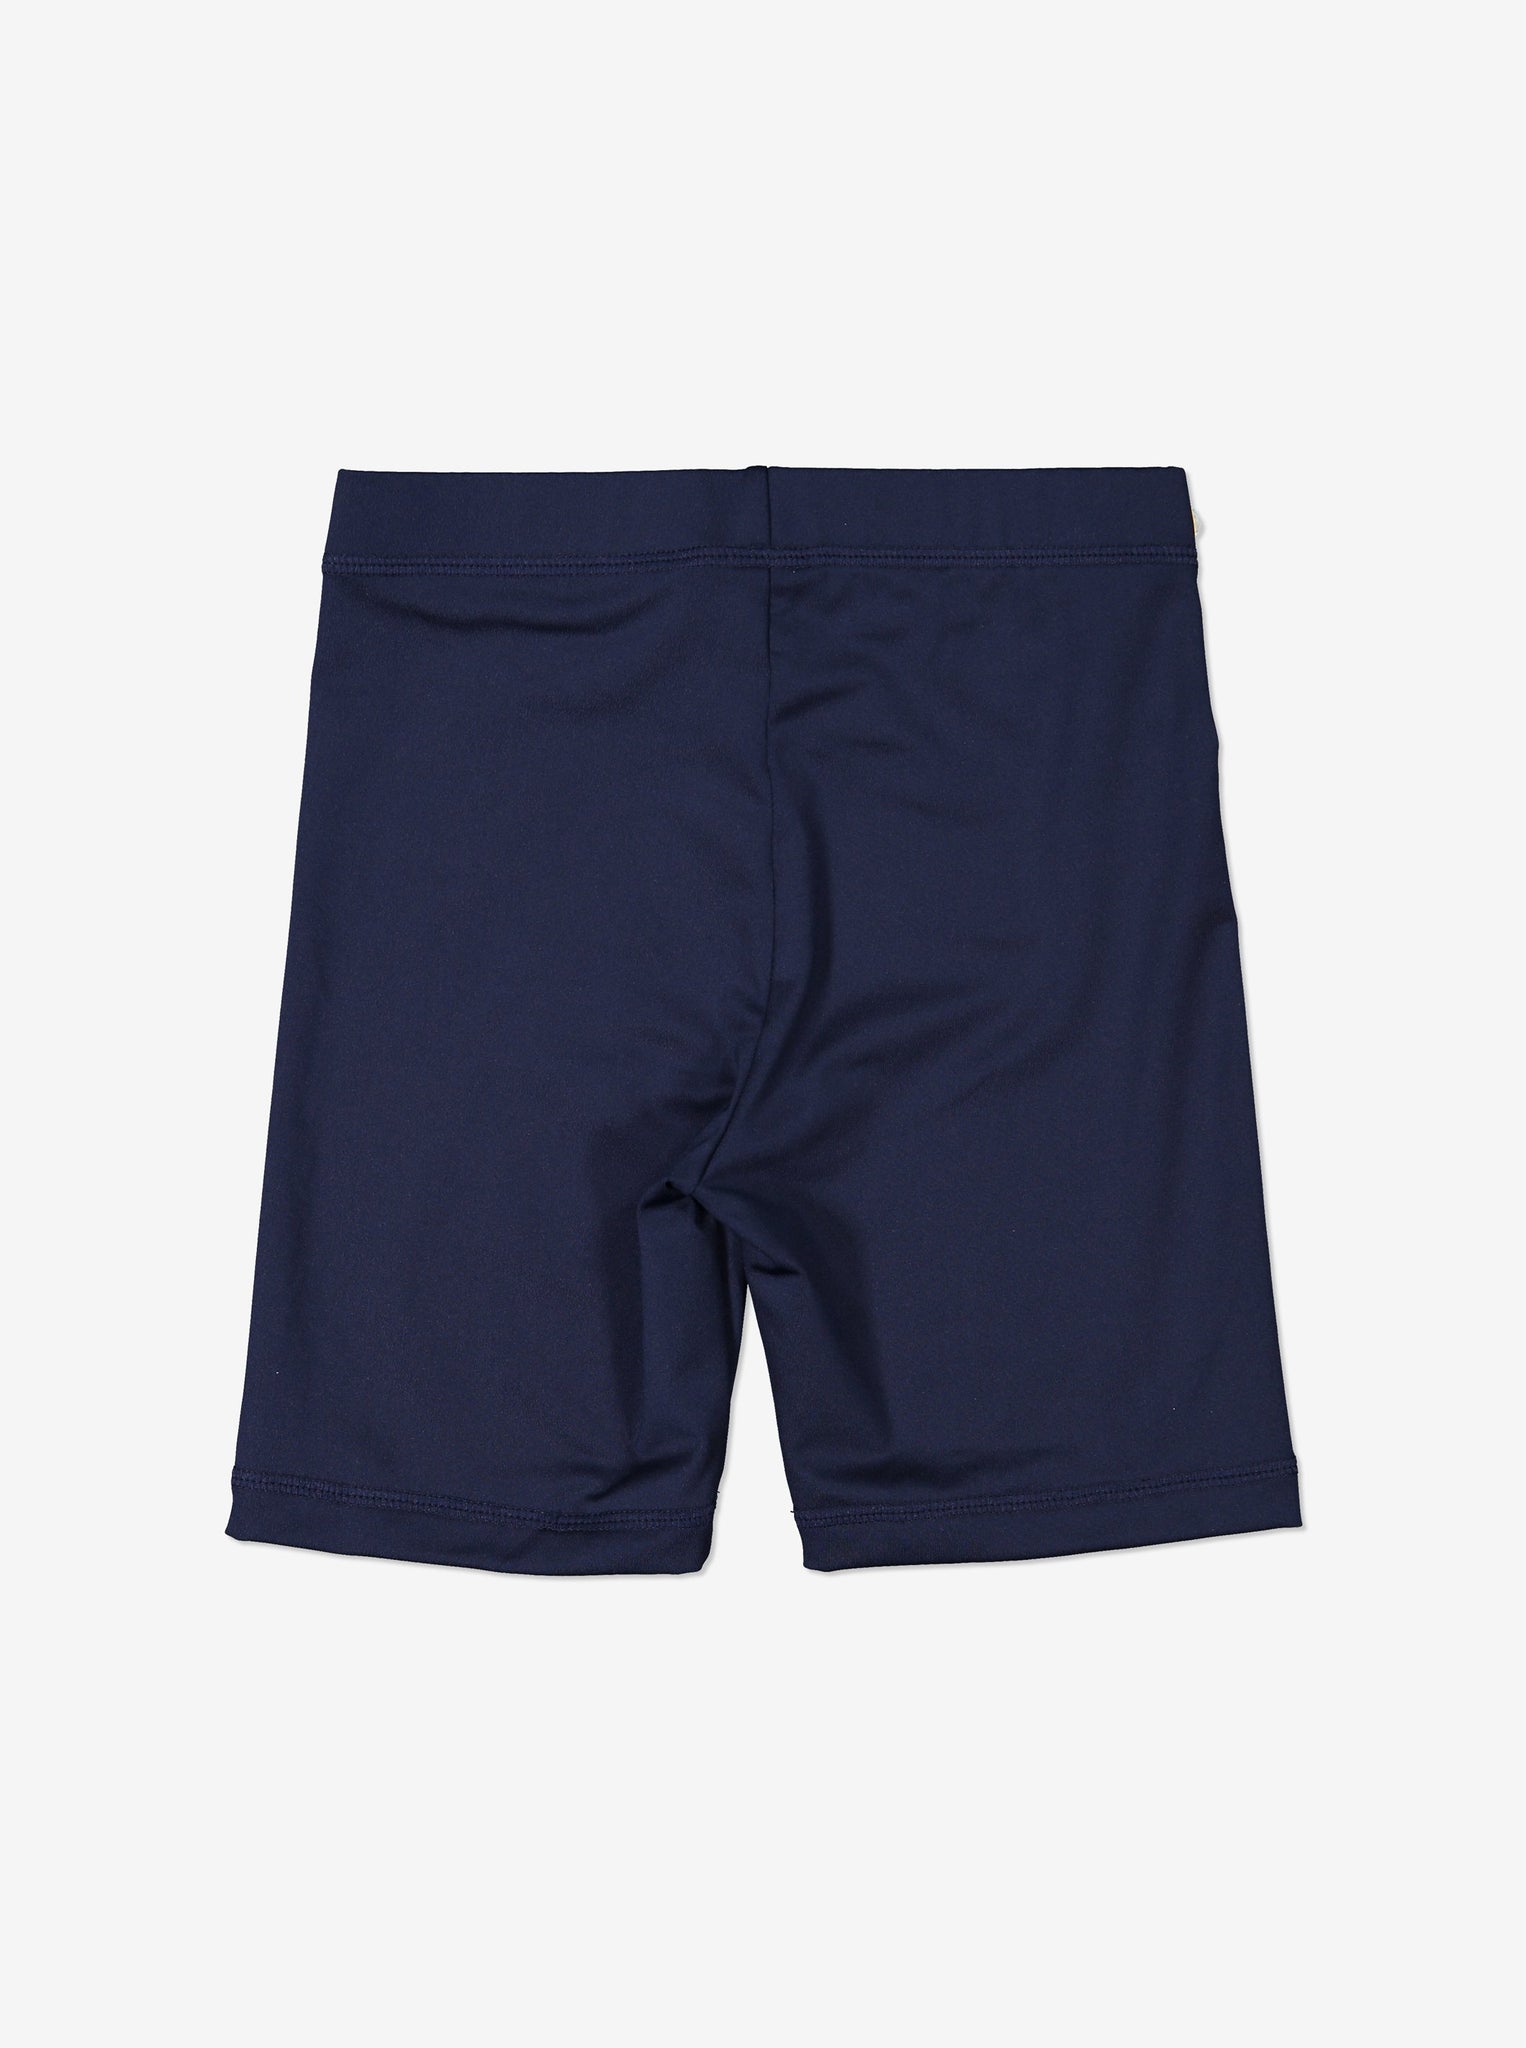 UV Kids Navy Swim Shorts